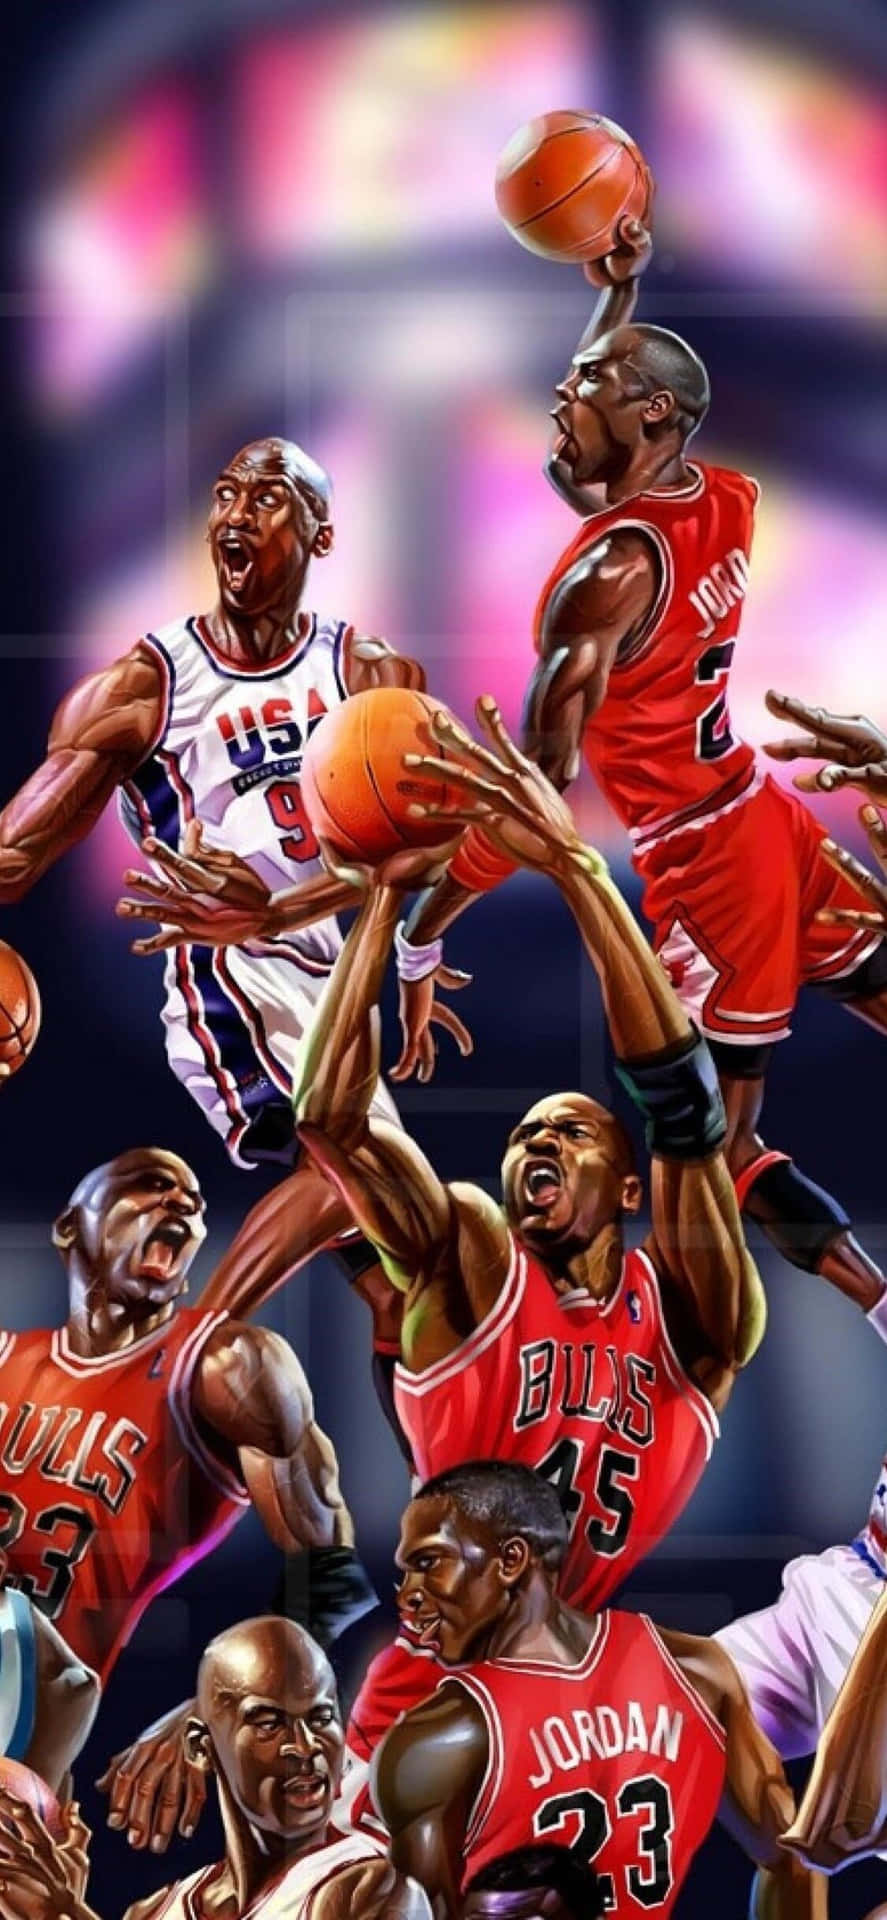 Være som Mike: Michael Jordan på en iPhone Wallpaper